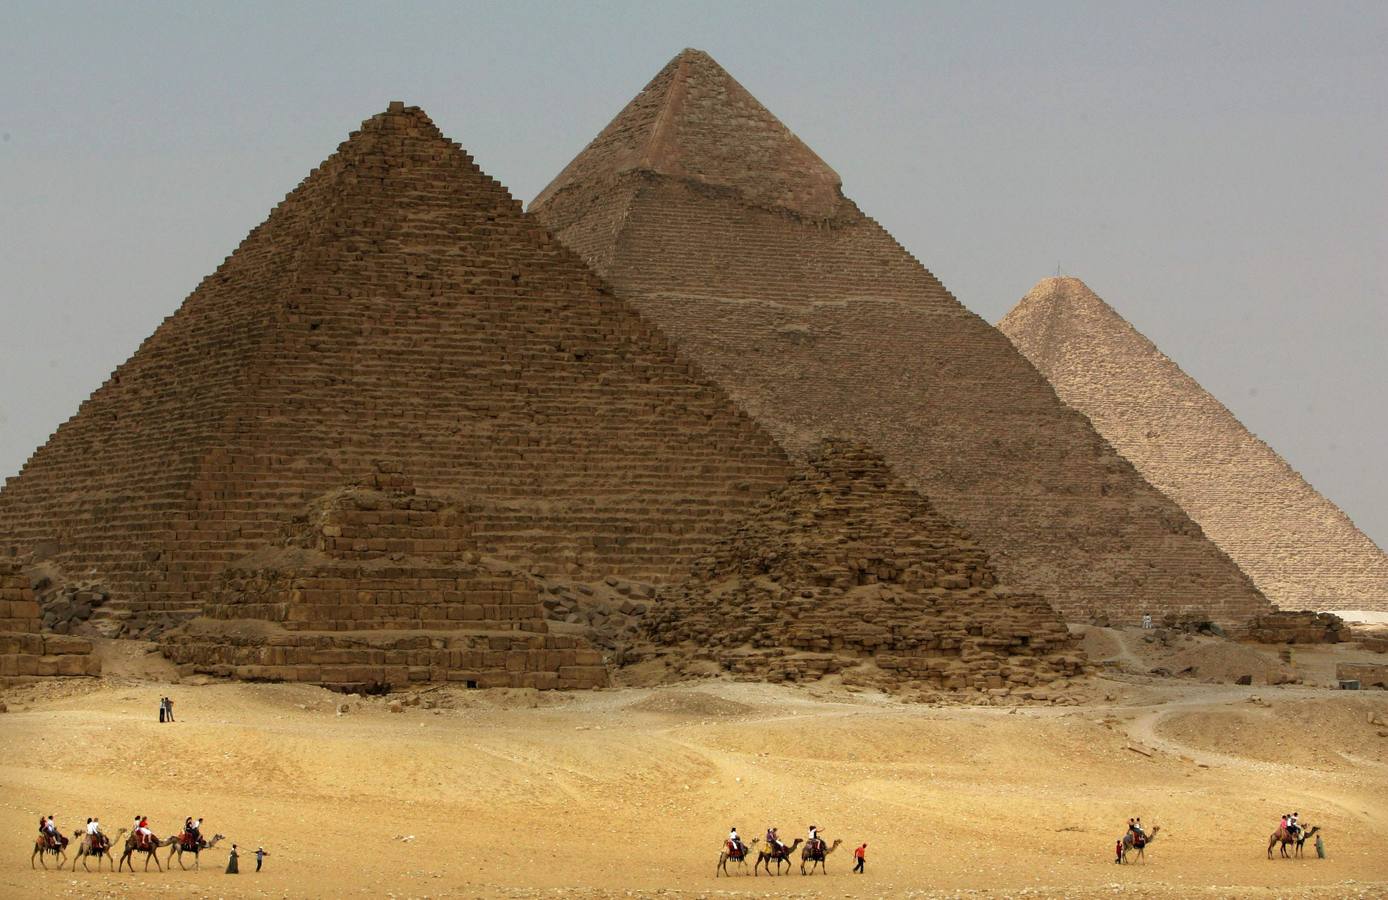 Pirámides de Giza (El Cairo). 3 millones de visitantes al año